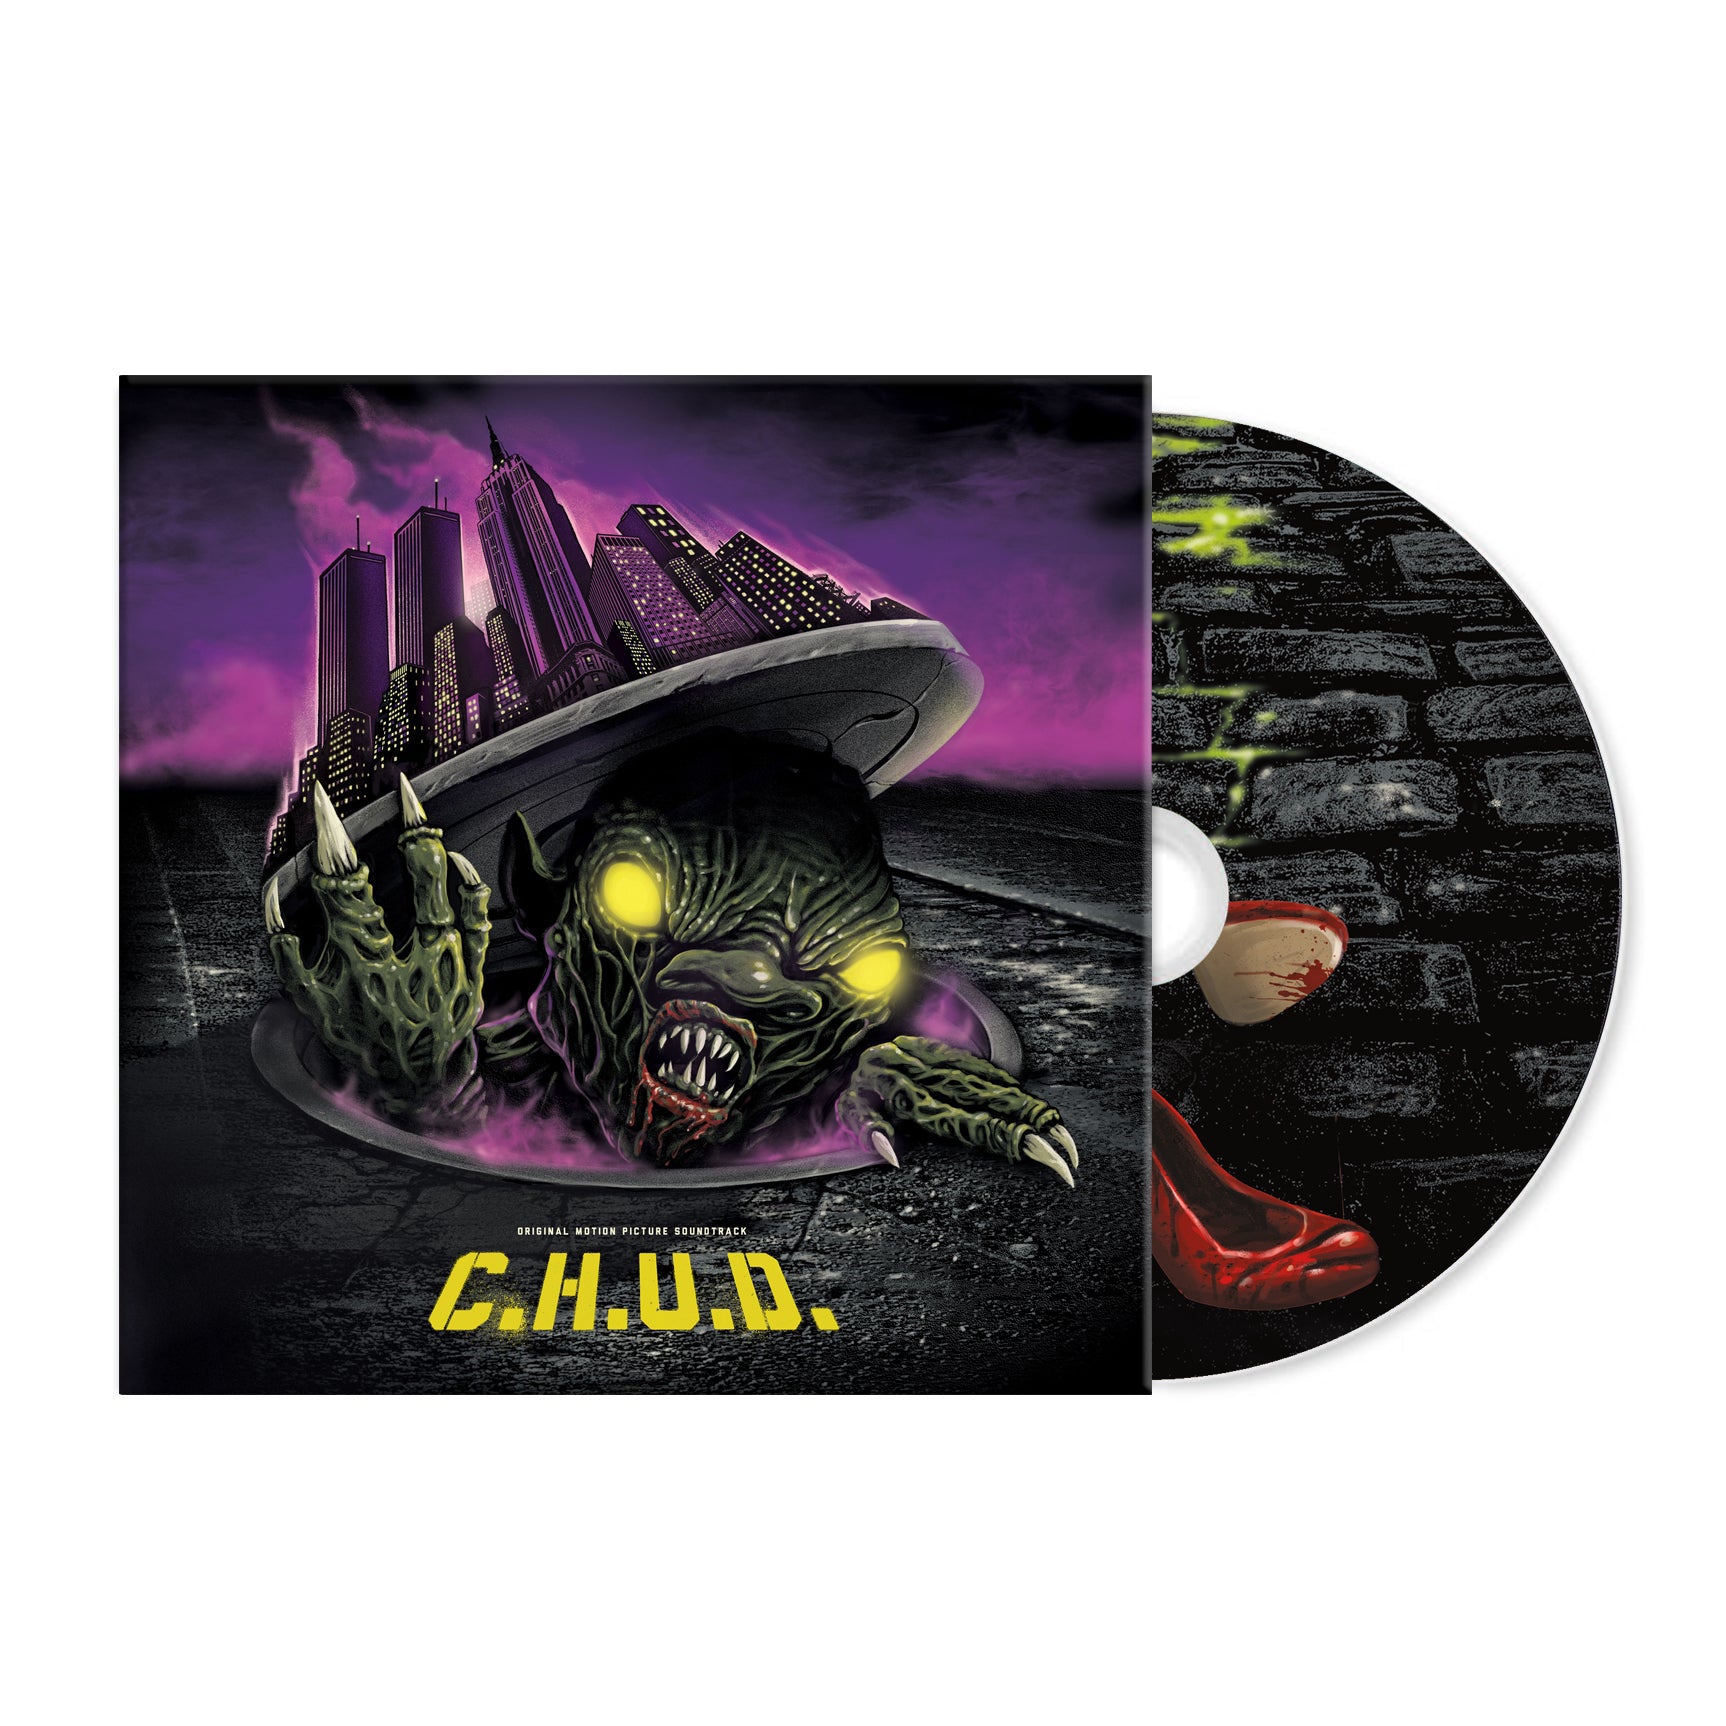 C.H.U.D. CD – Waxwork Records